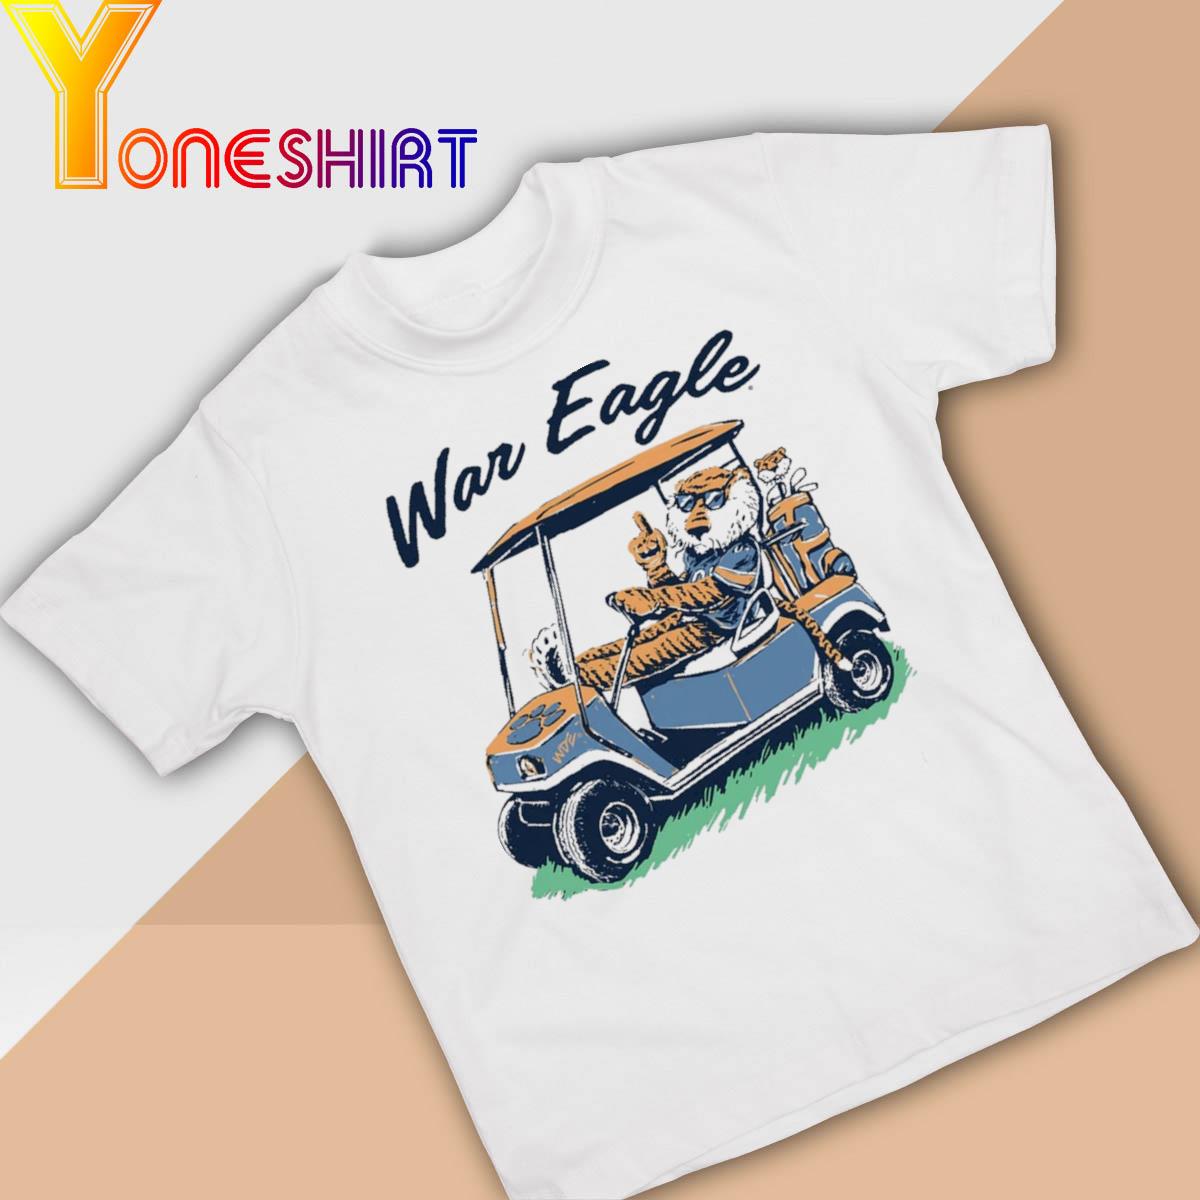 Official War Eagle Aubie Golf Cart shirt